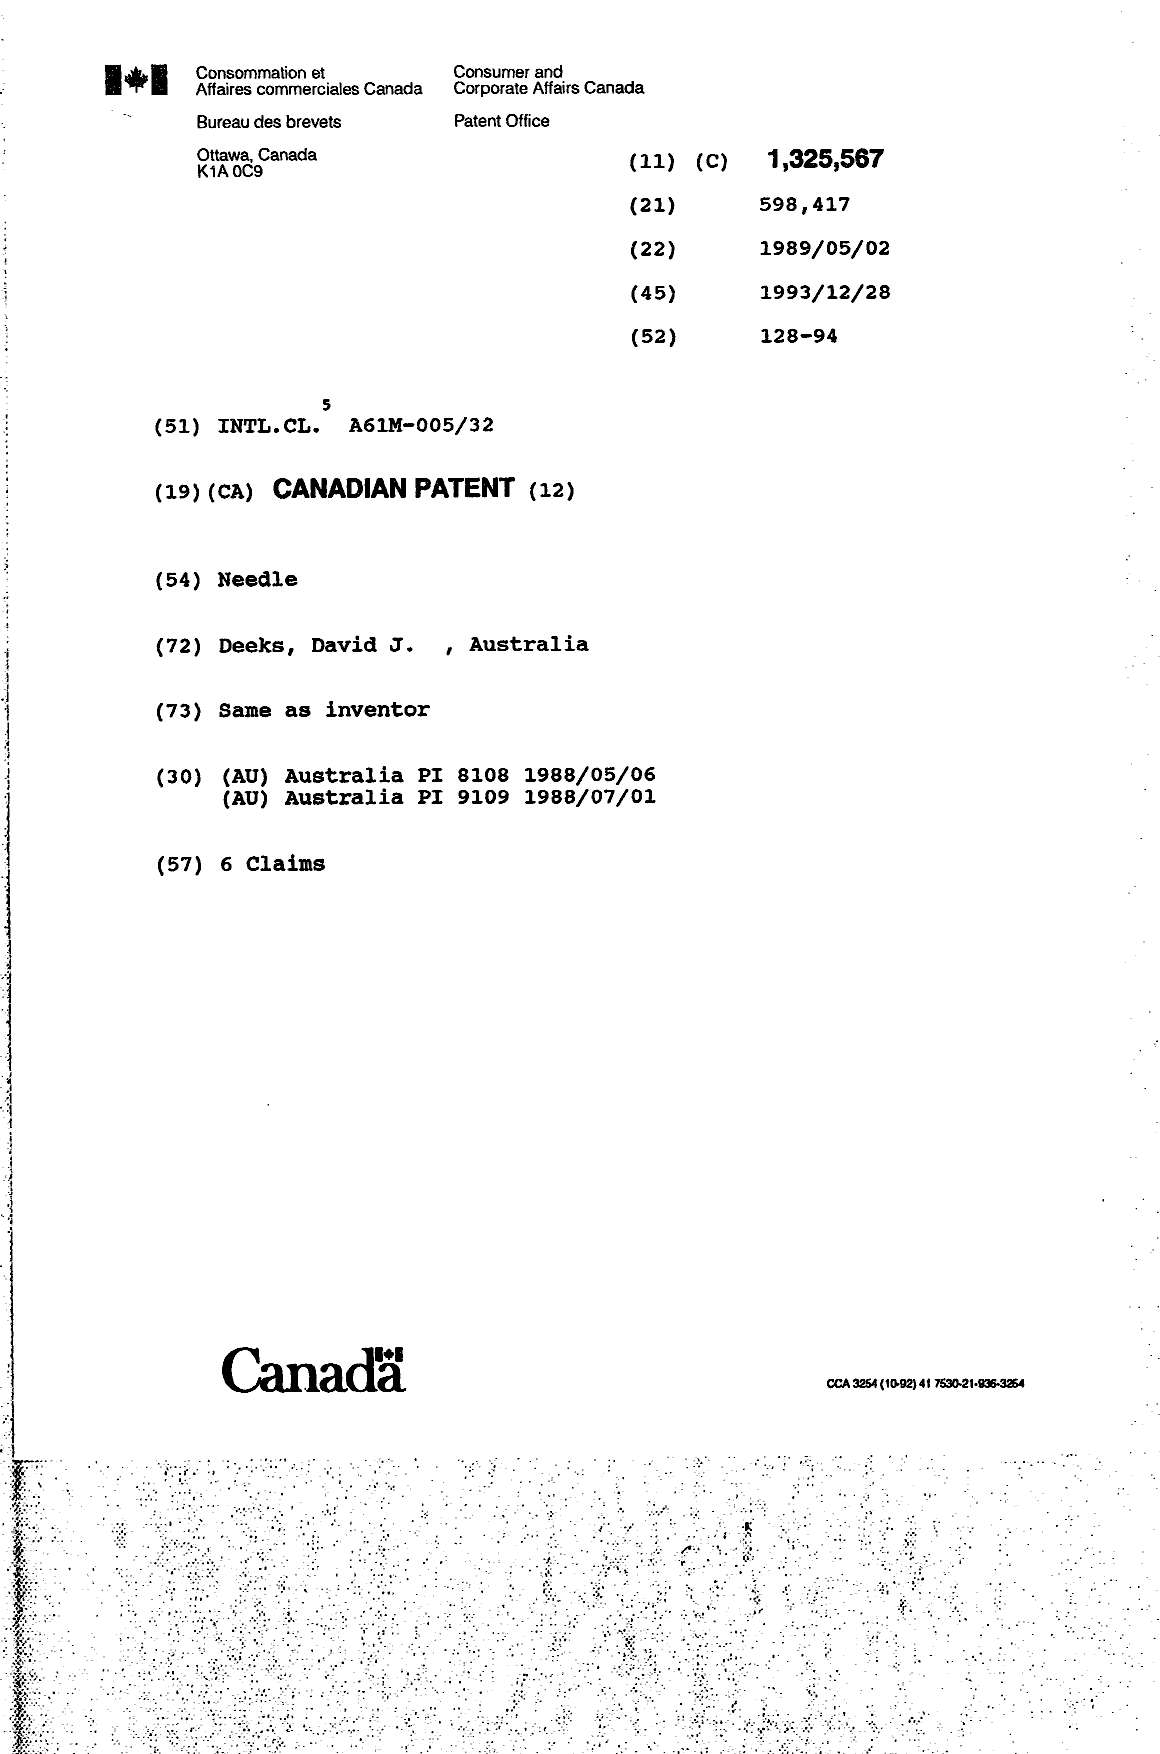 Document de brevet canadien 1325567. Page couverture 19940716. Image 1 de 1